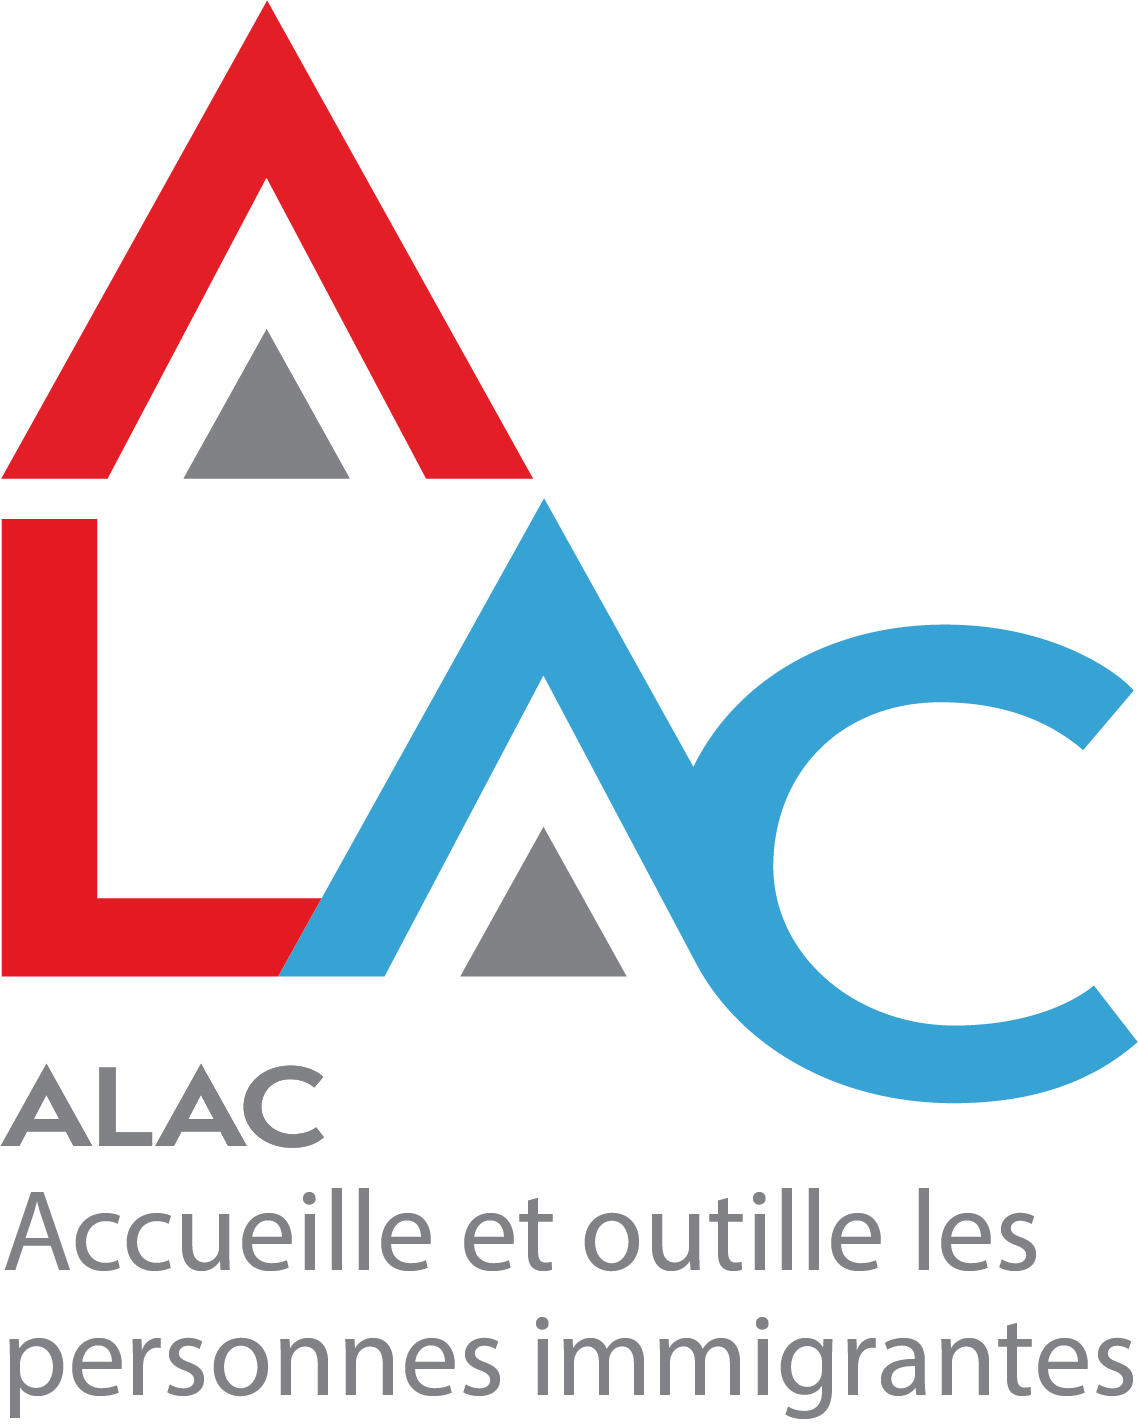 ALAC (Alliance pour l’accueil et l’intégration des personnes immigrantes)